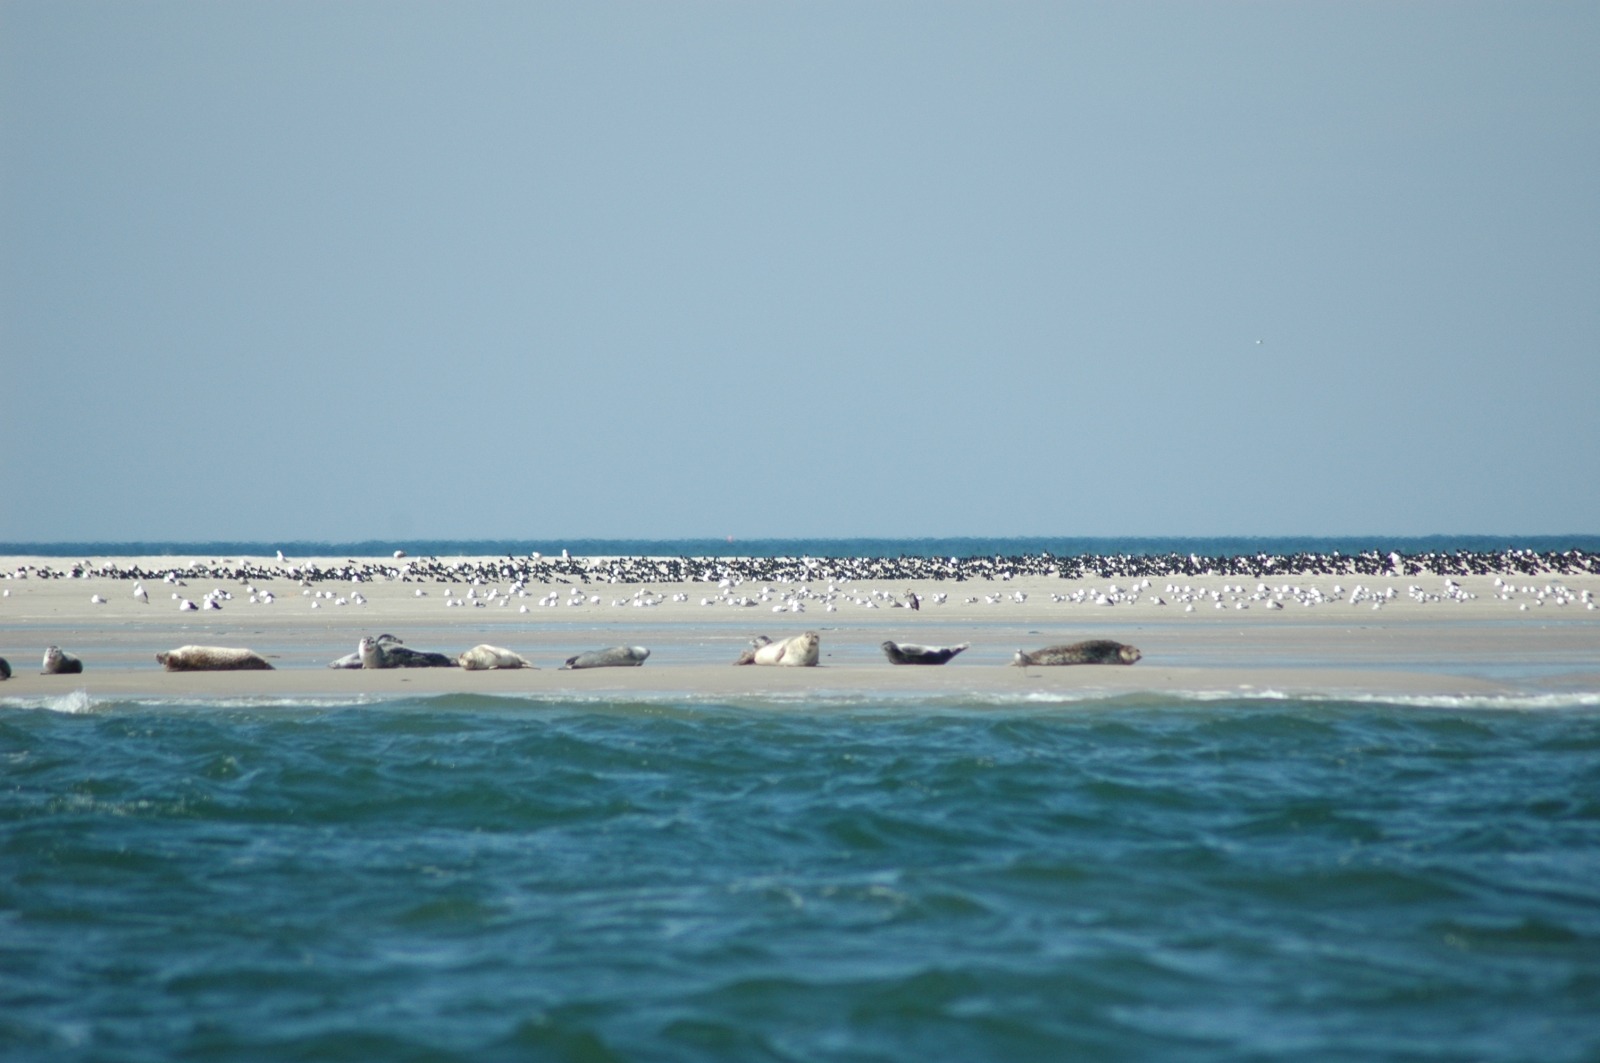 De luierende zeehonden in de verte op een zandplaat doen je beseffen dat je toch ‘gewoon’ op de Waddenzee vaart.